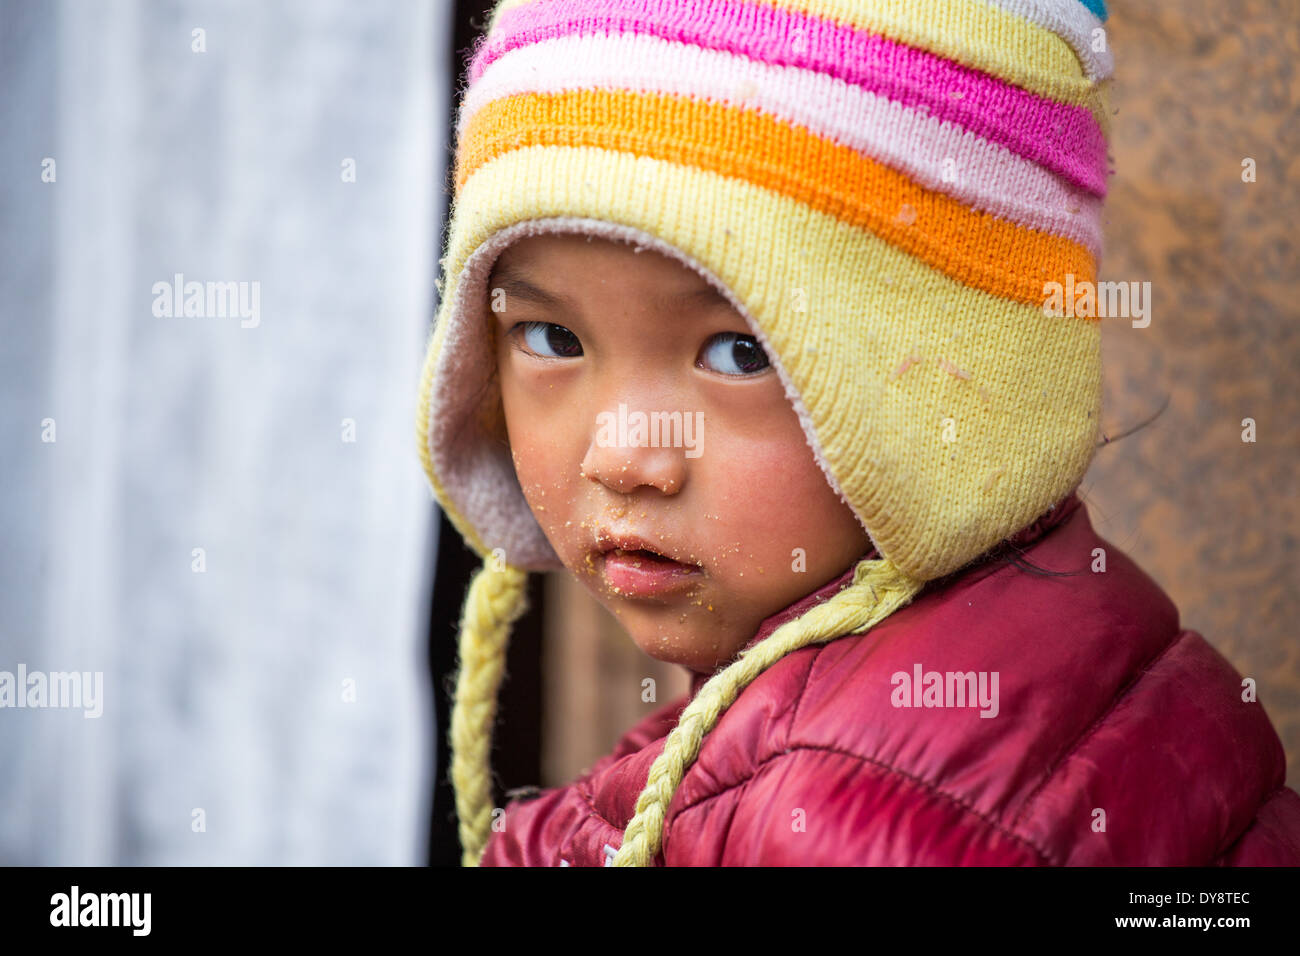 Napali Young Boy in einem Hauseingang in Kathmandu, Nepal Stockfoto